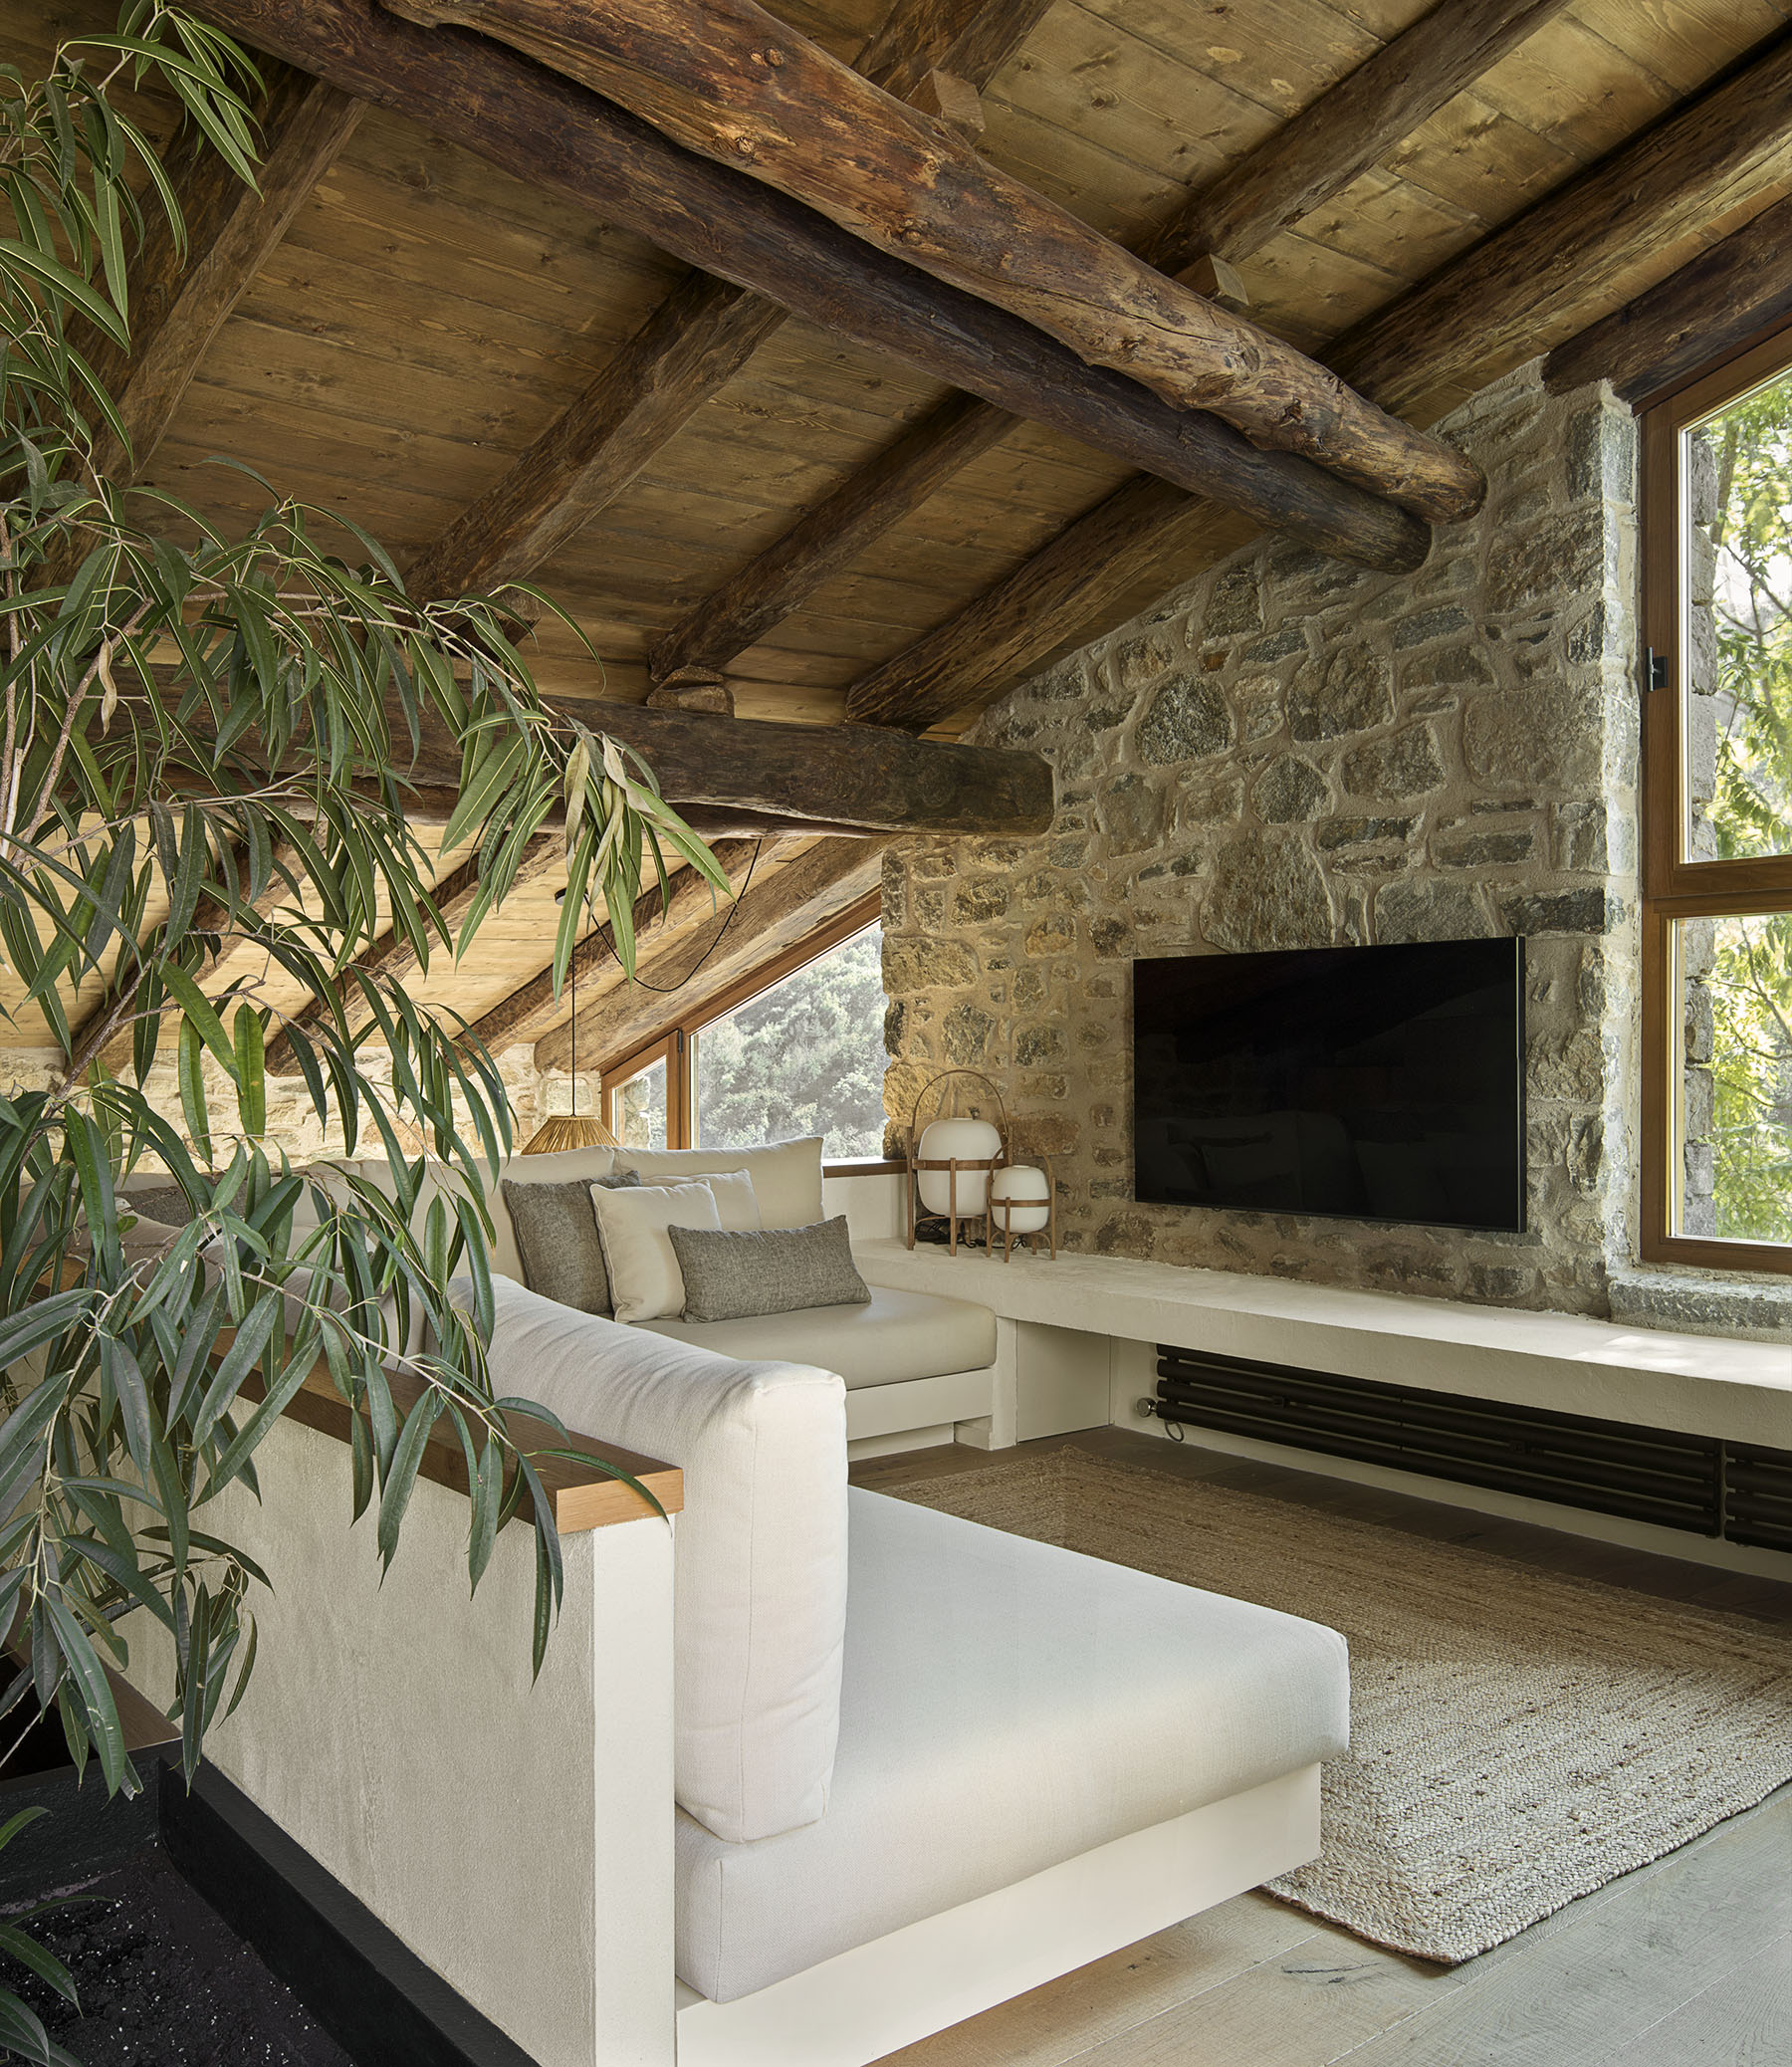 sofá de obra blanco y gris, salón con techo bajo de madera